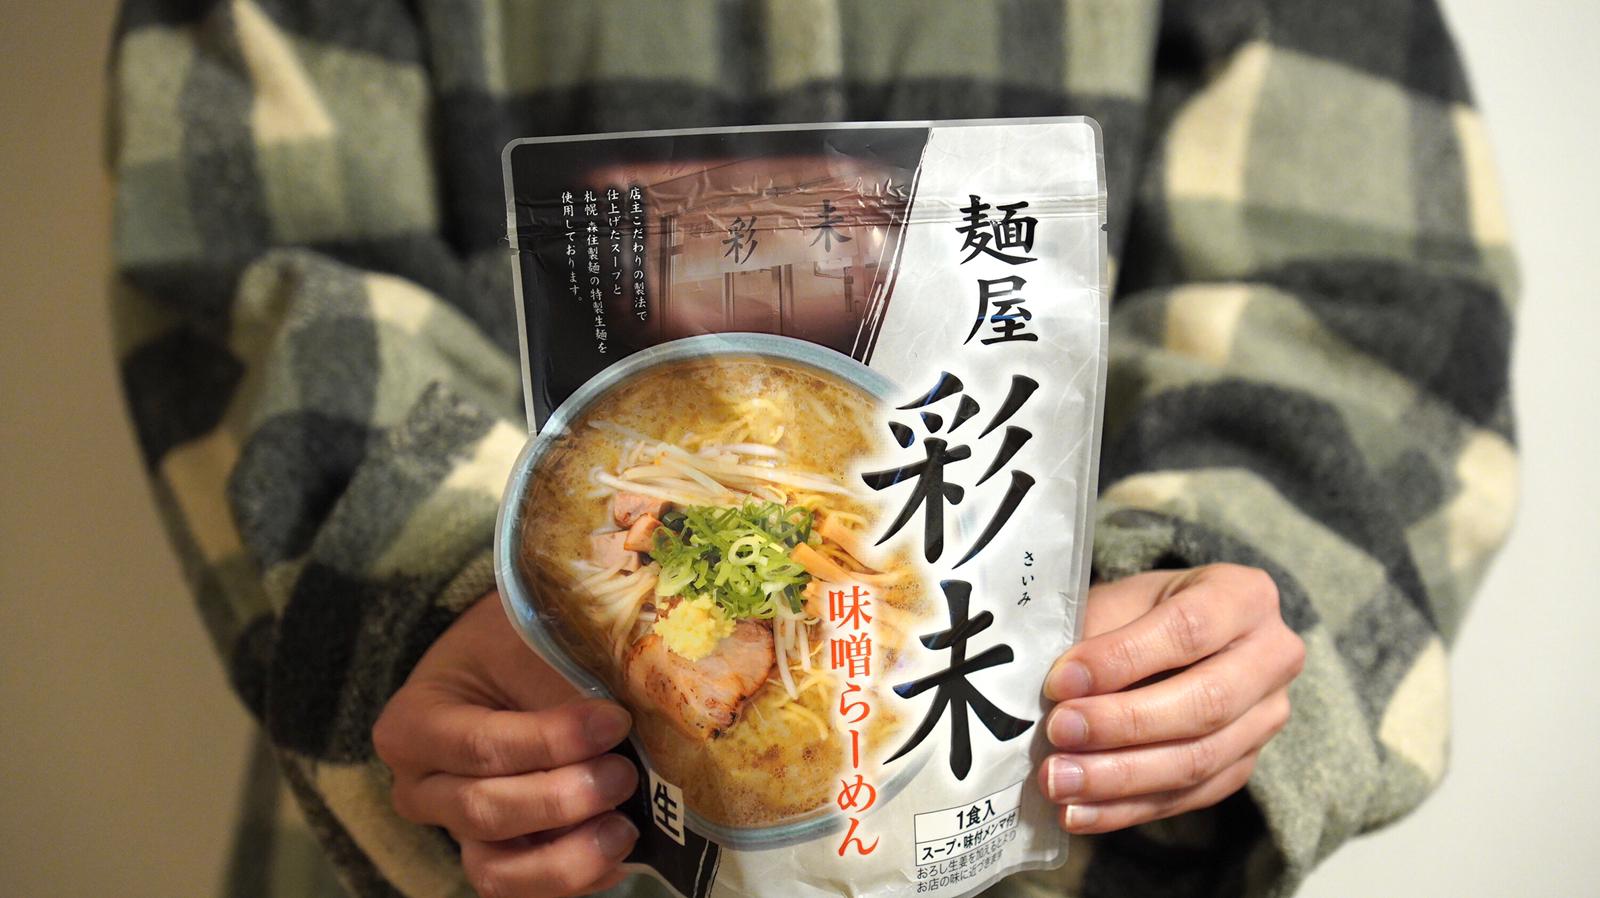 米芝蓮推介 「札幌彩未」味噌湯底拉麵 220g【常溫品】